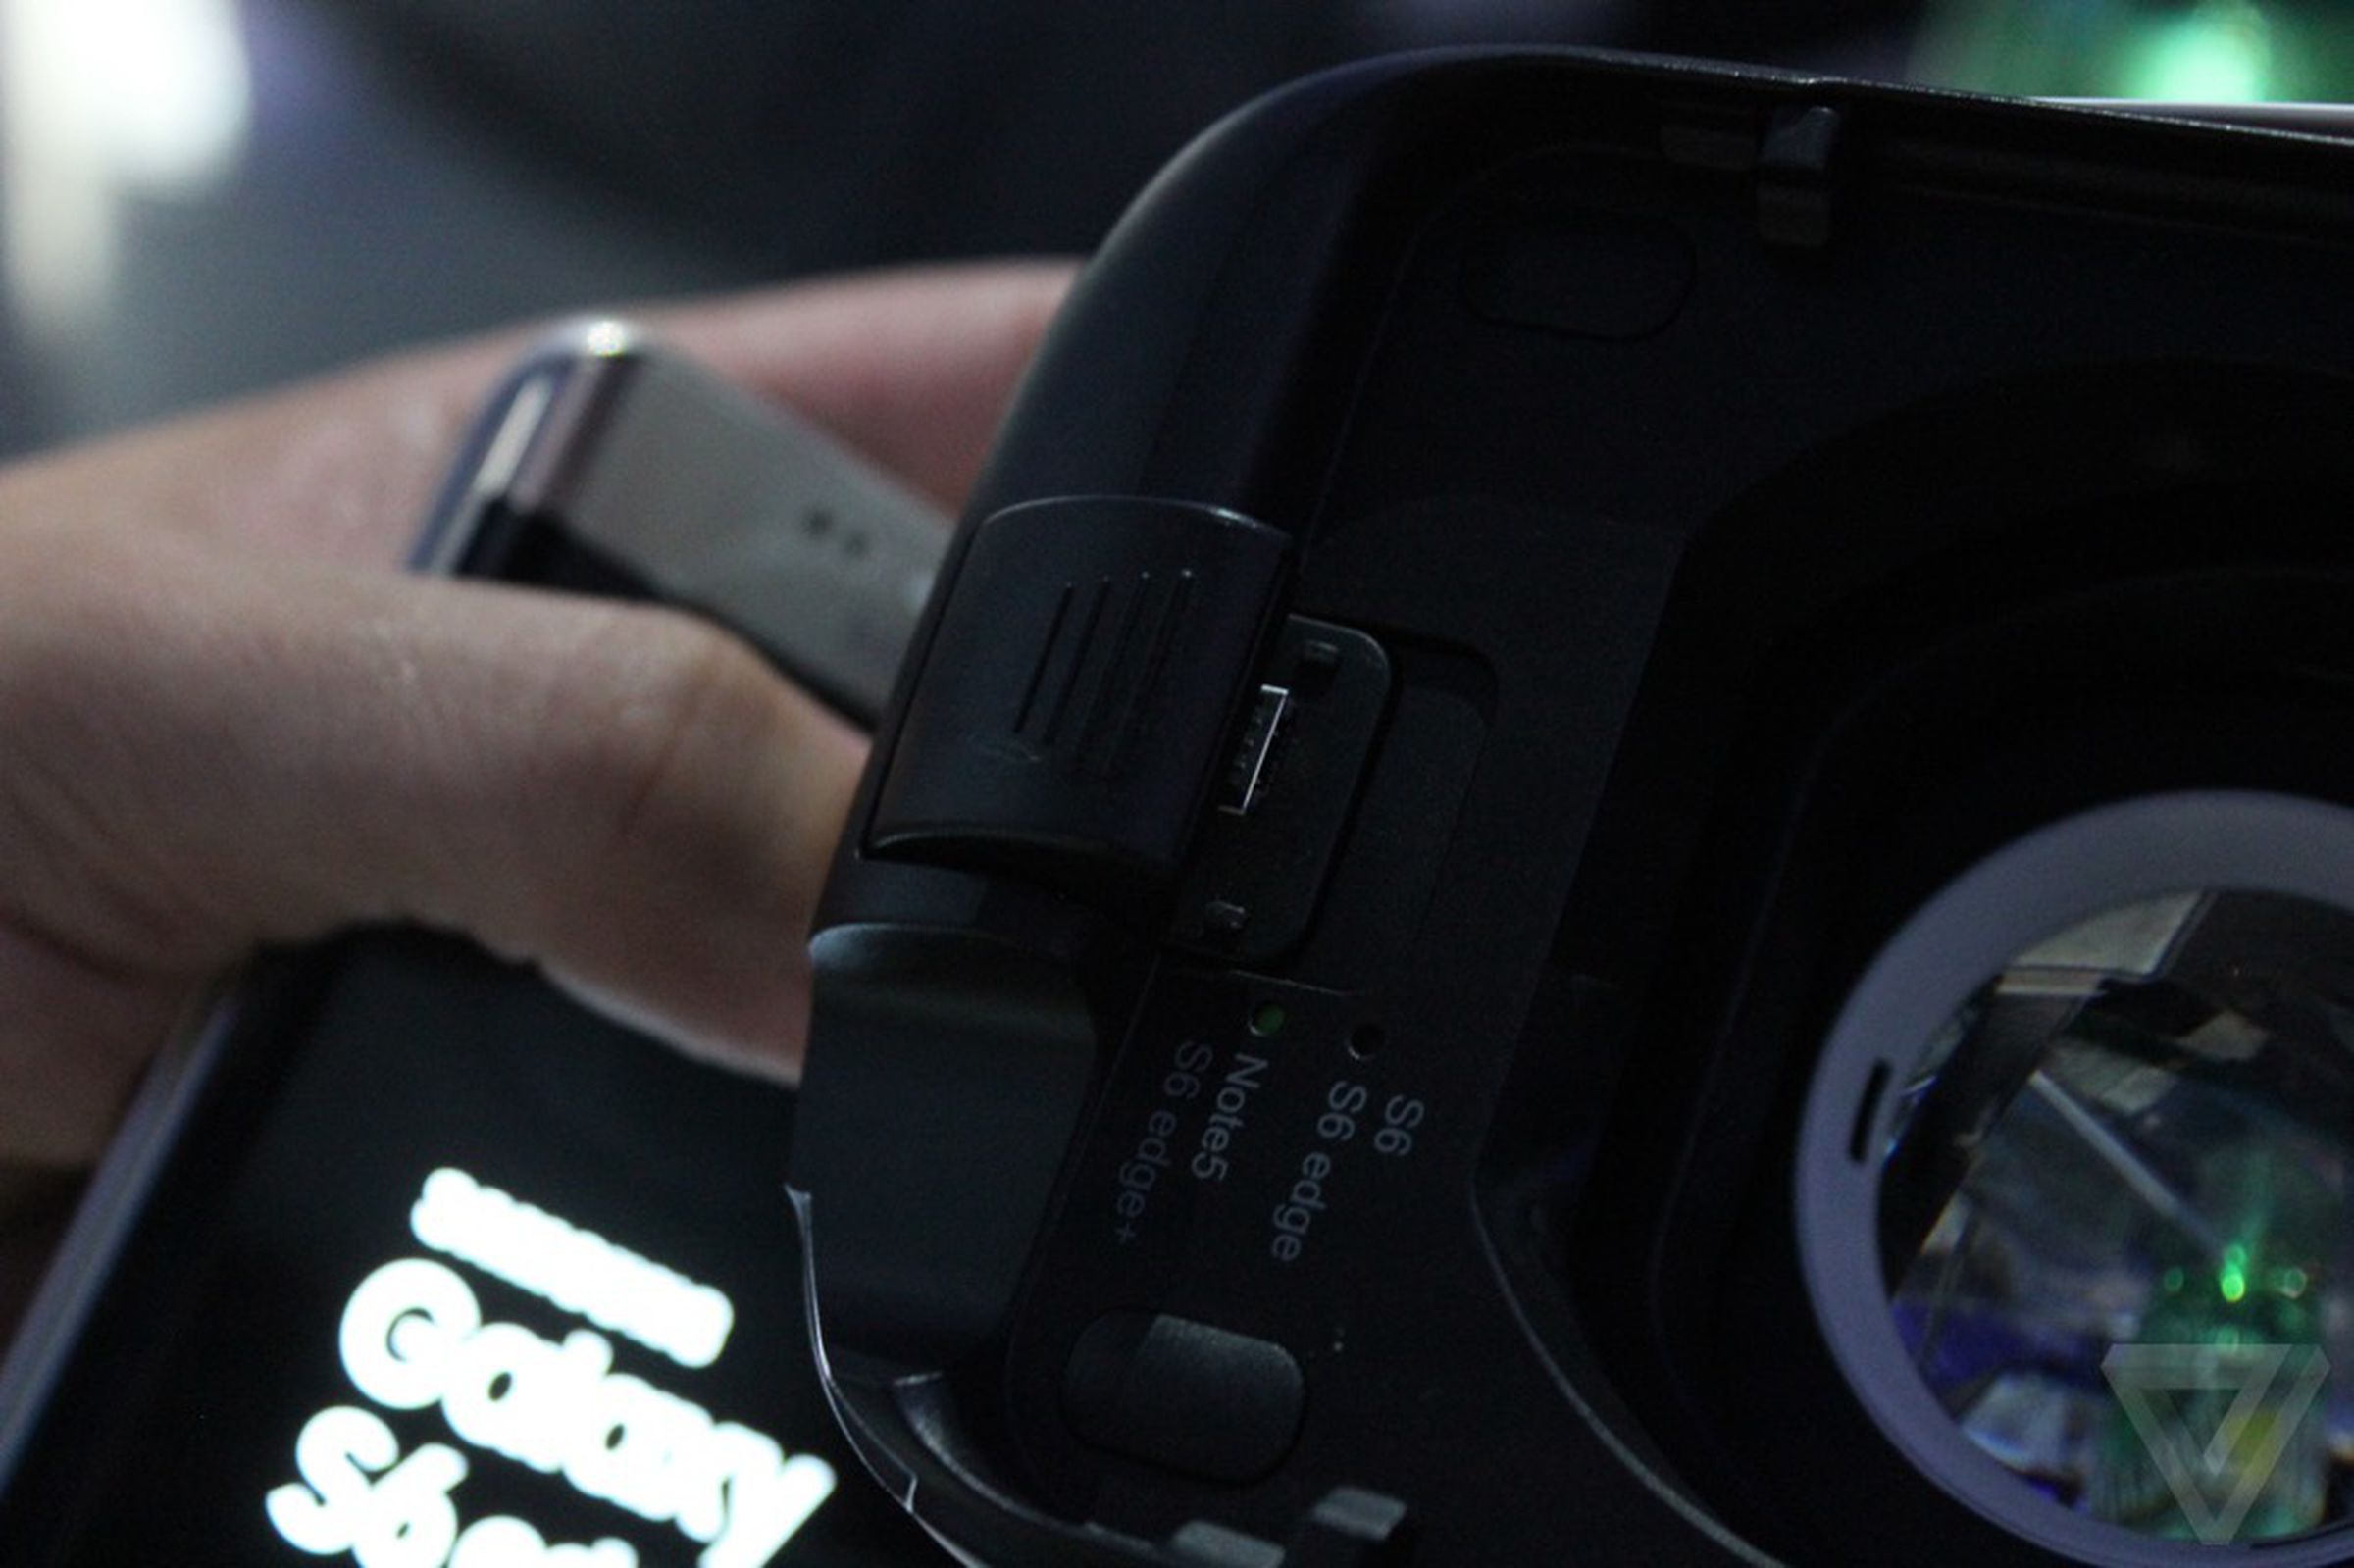 Samsung Gear VR Consumer